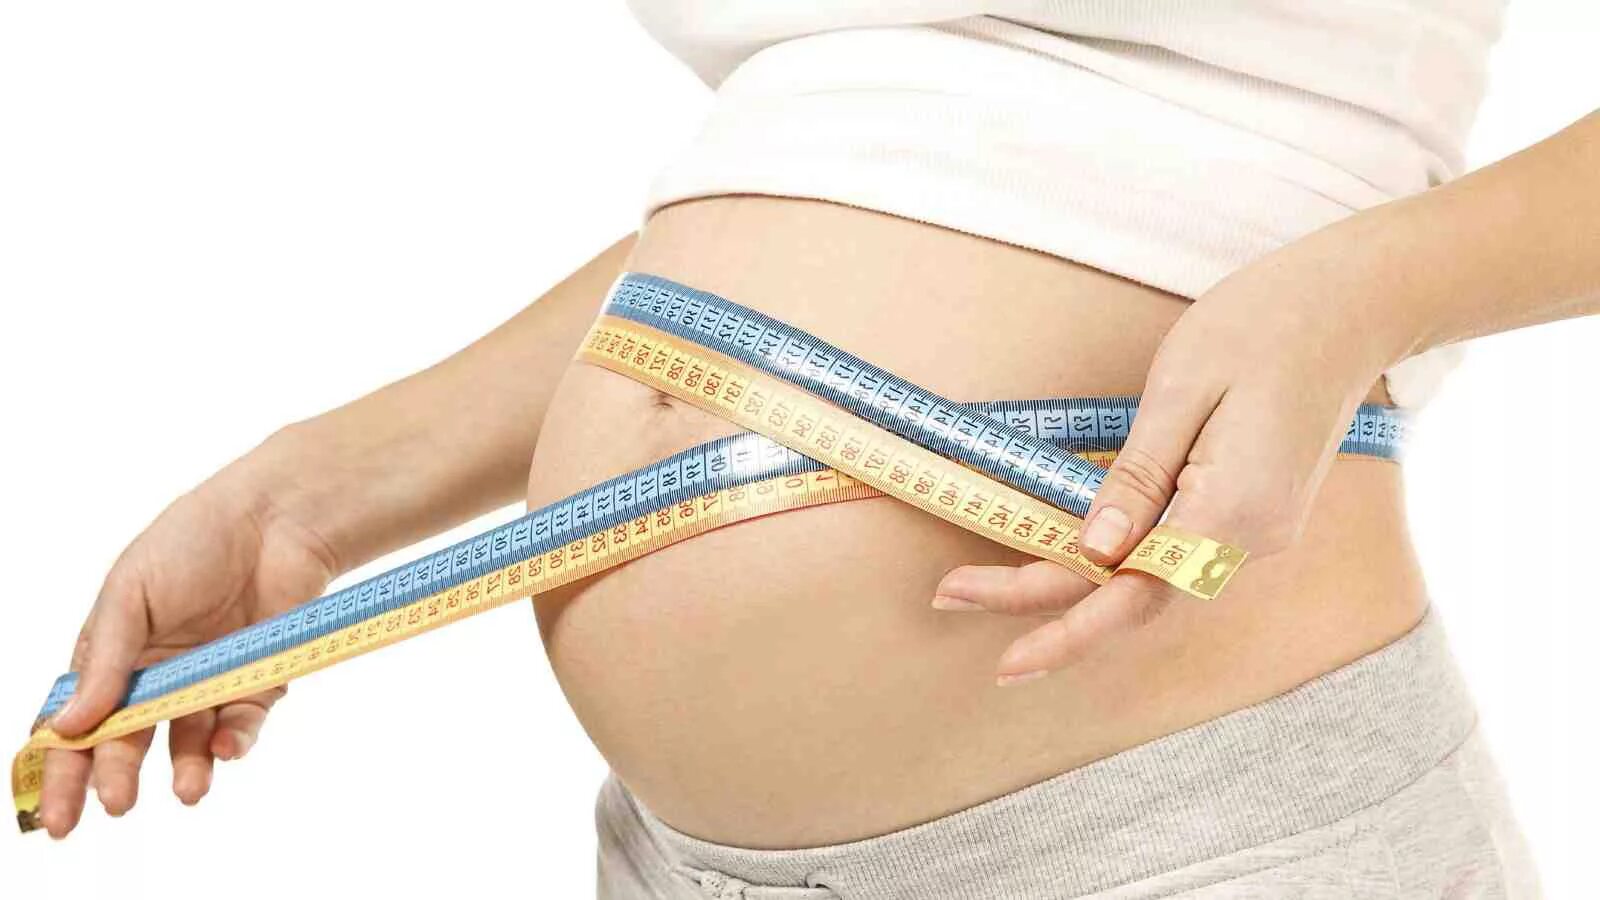 Измерение окружности живота. Измерение окружности живота беременной. Избыточный вес при беременности. Растет вес и живот